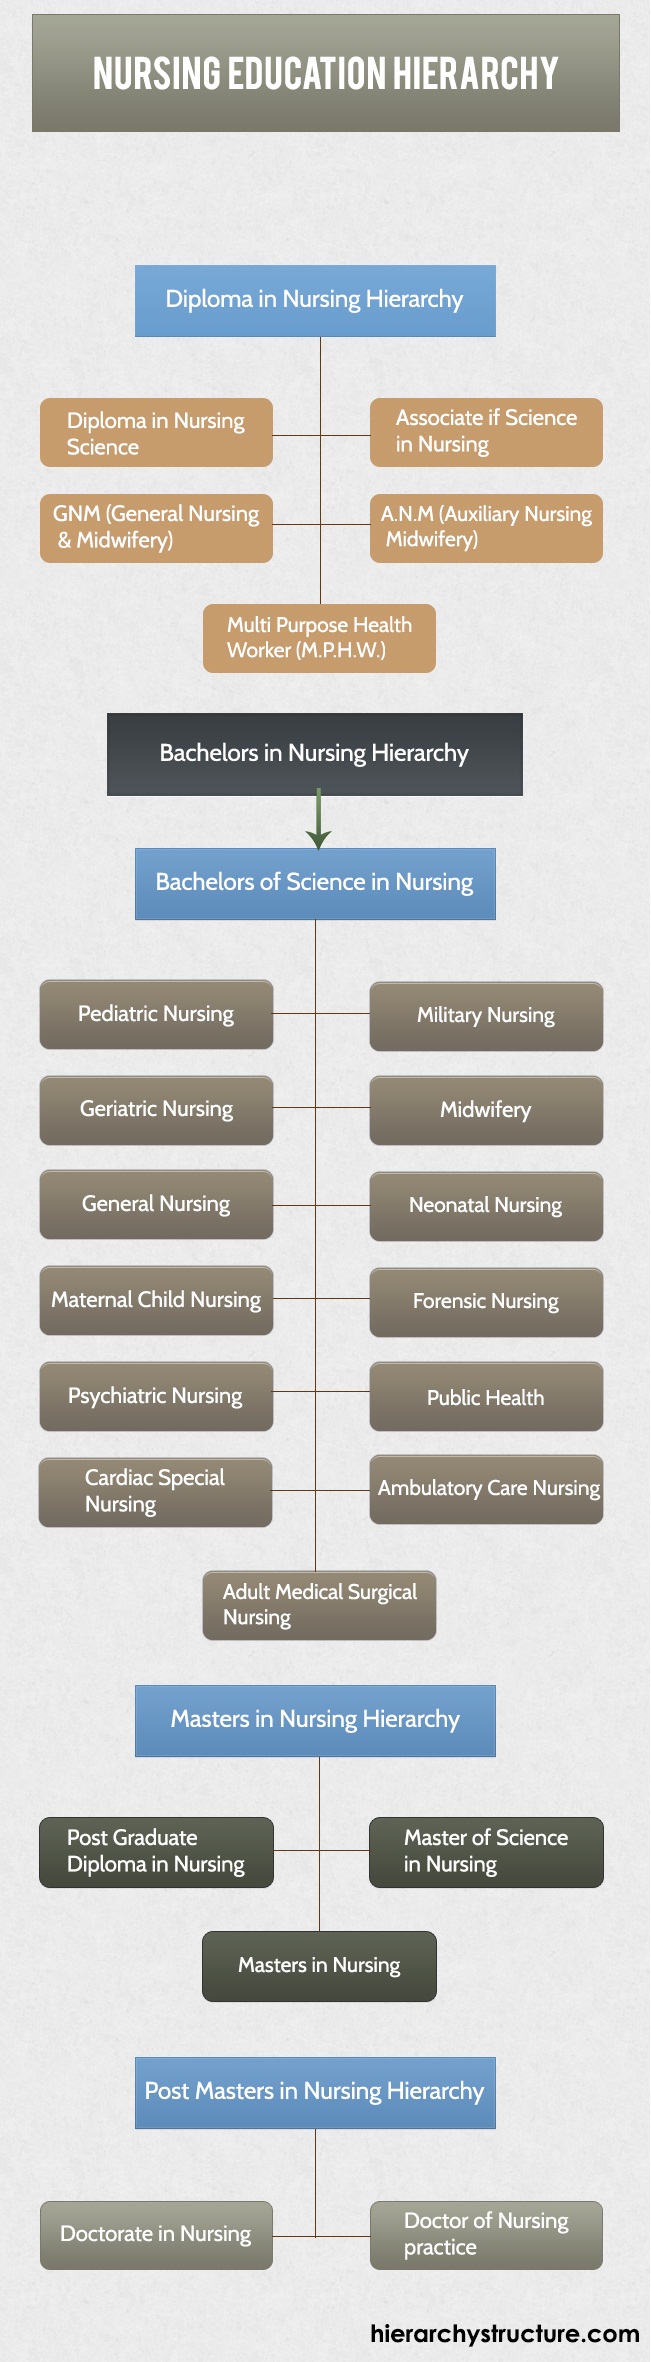 Nursing Education Hierarchy